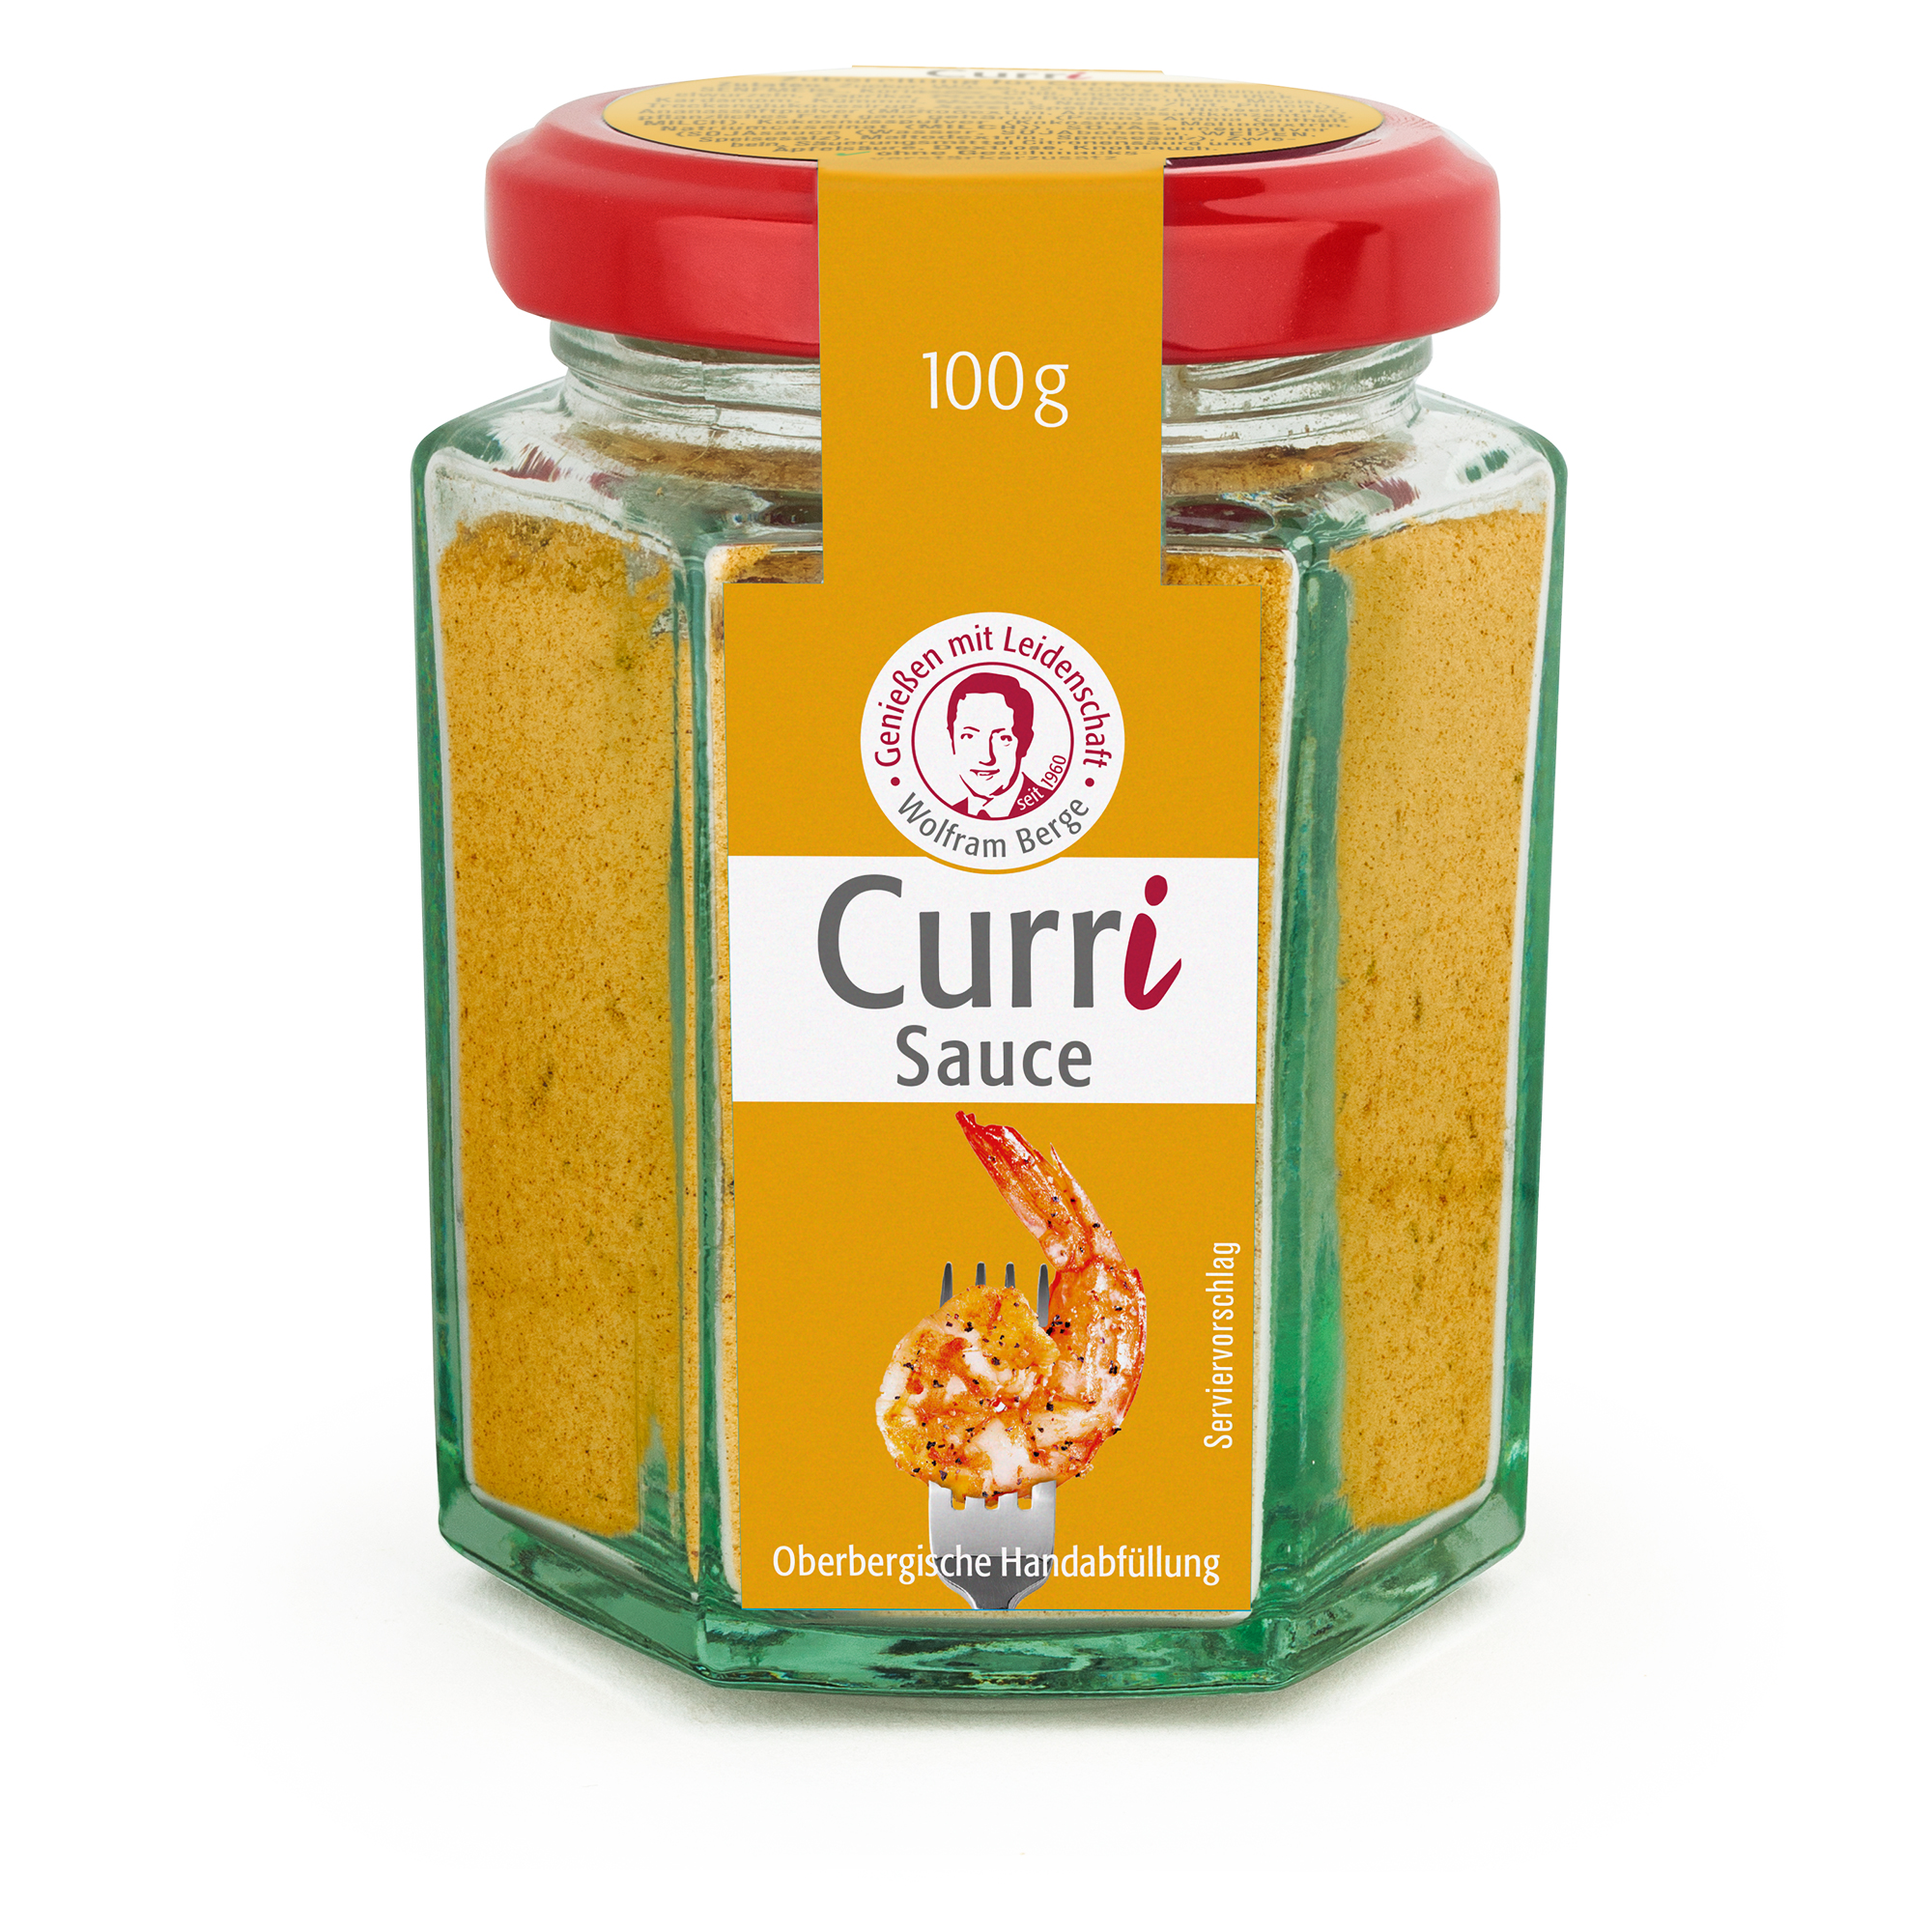 Curri Sauce